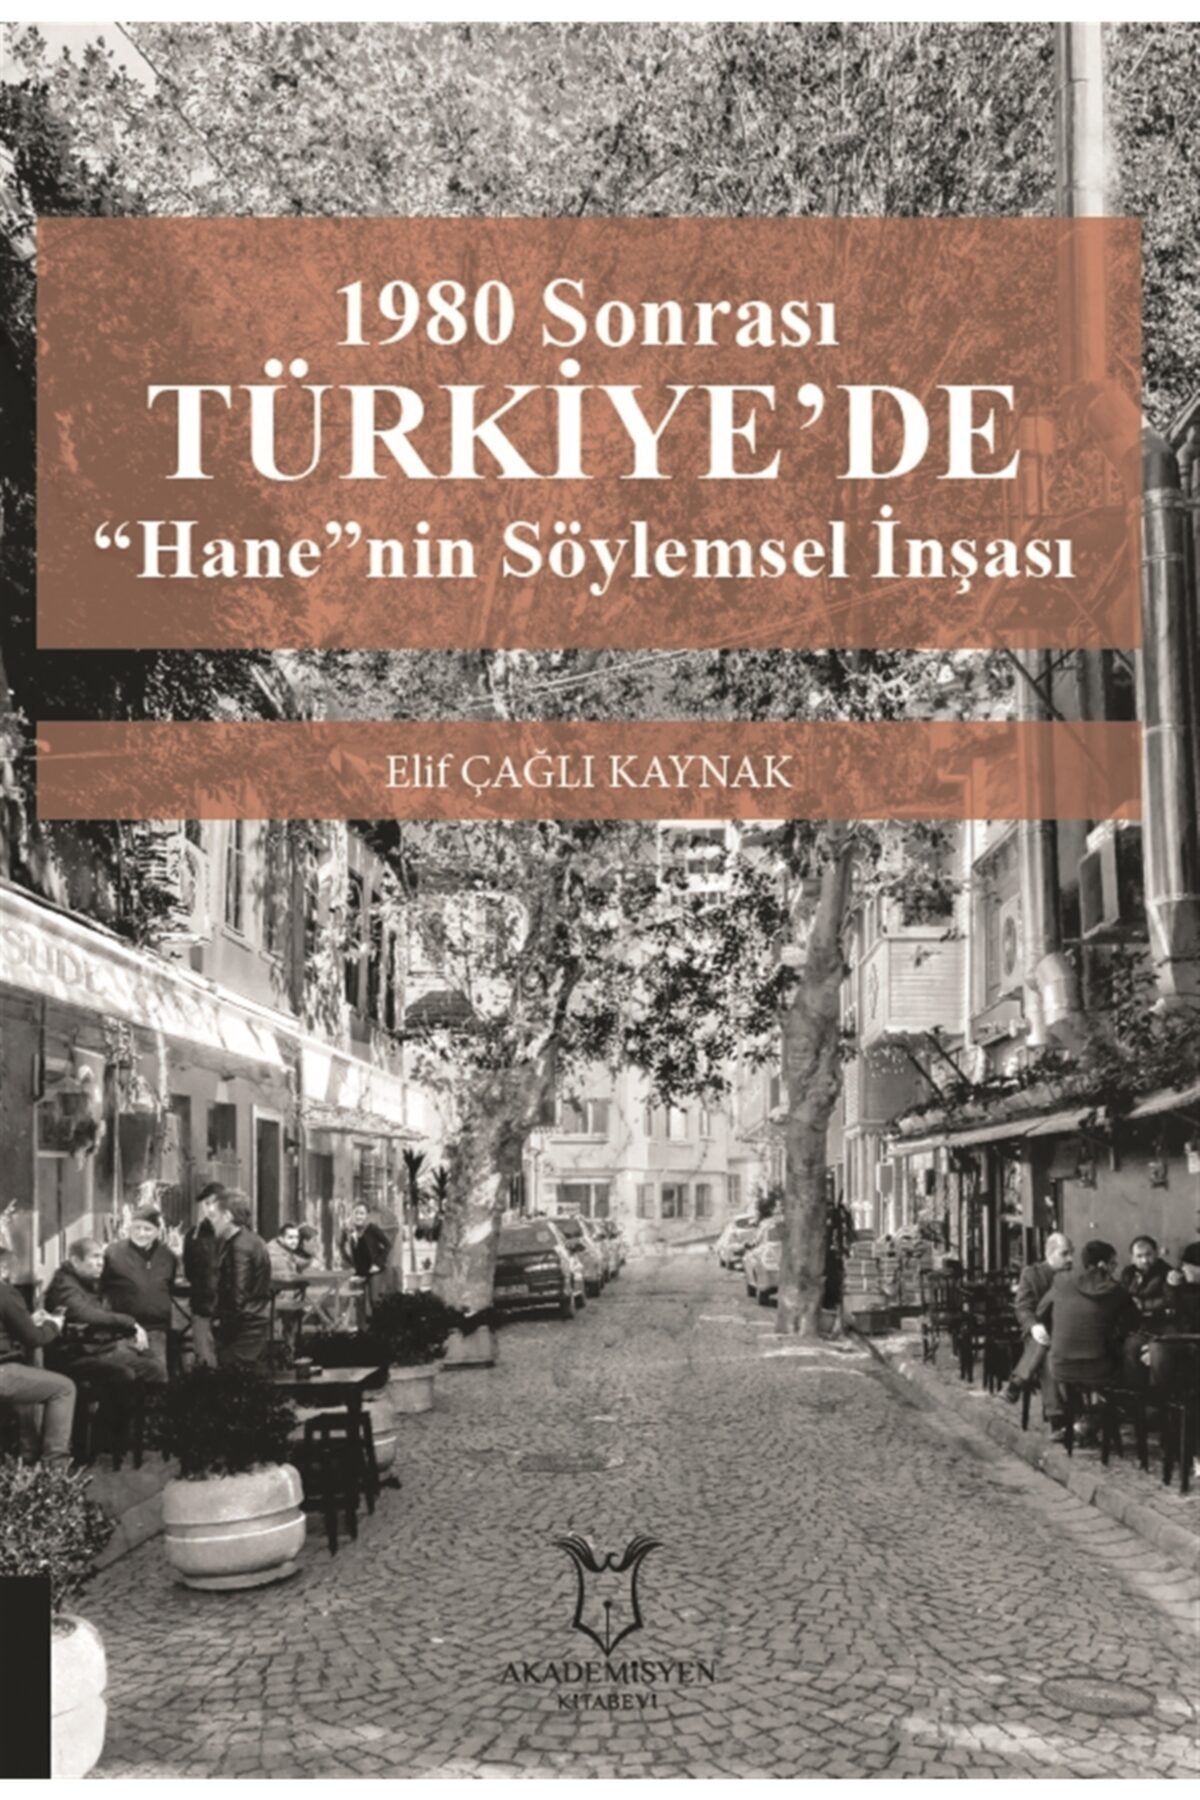 Akademisyen Kitabevi 1980 Sonrası Türkiye'de “hane”nin Söylemsel Inşası - Elif Çağlı Kaynak 9786257679350